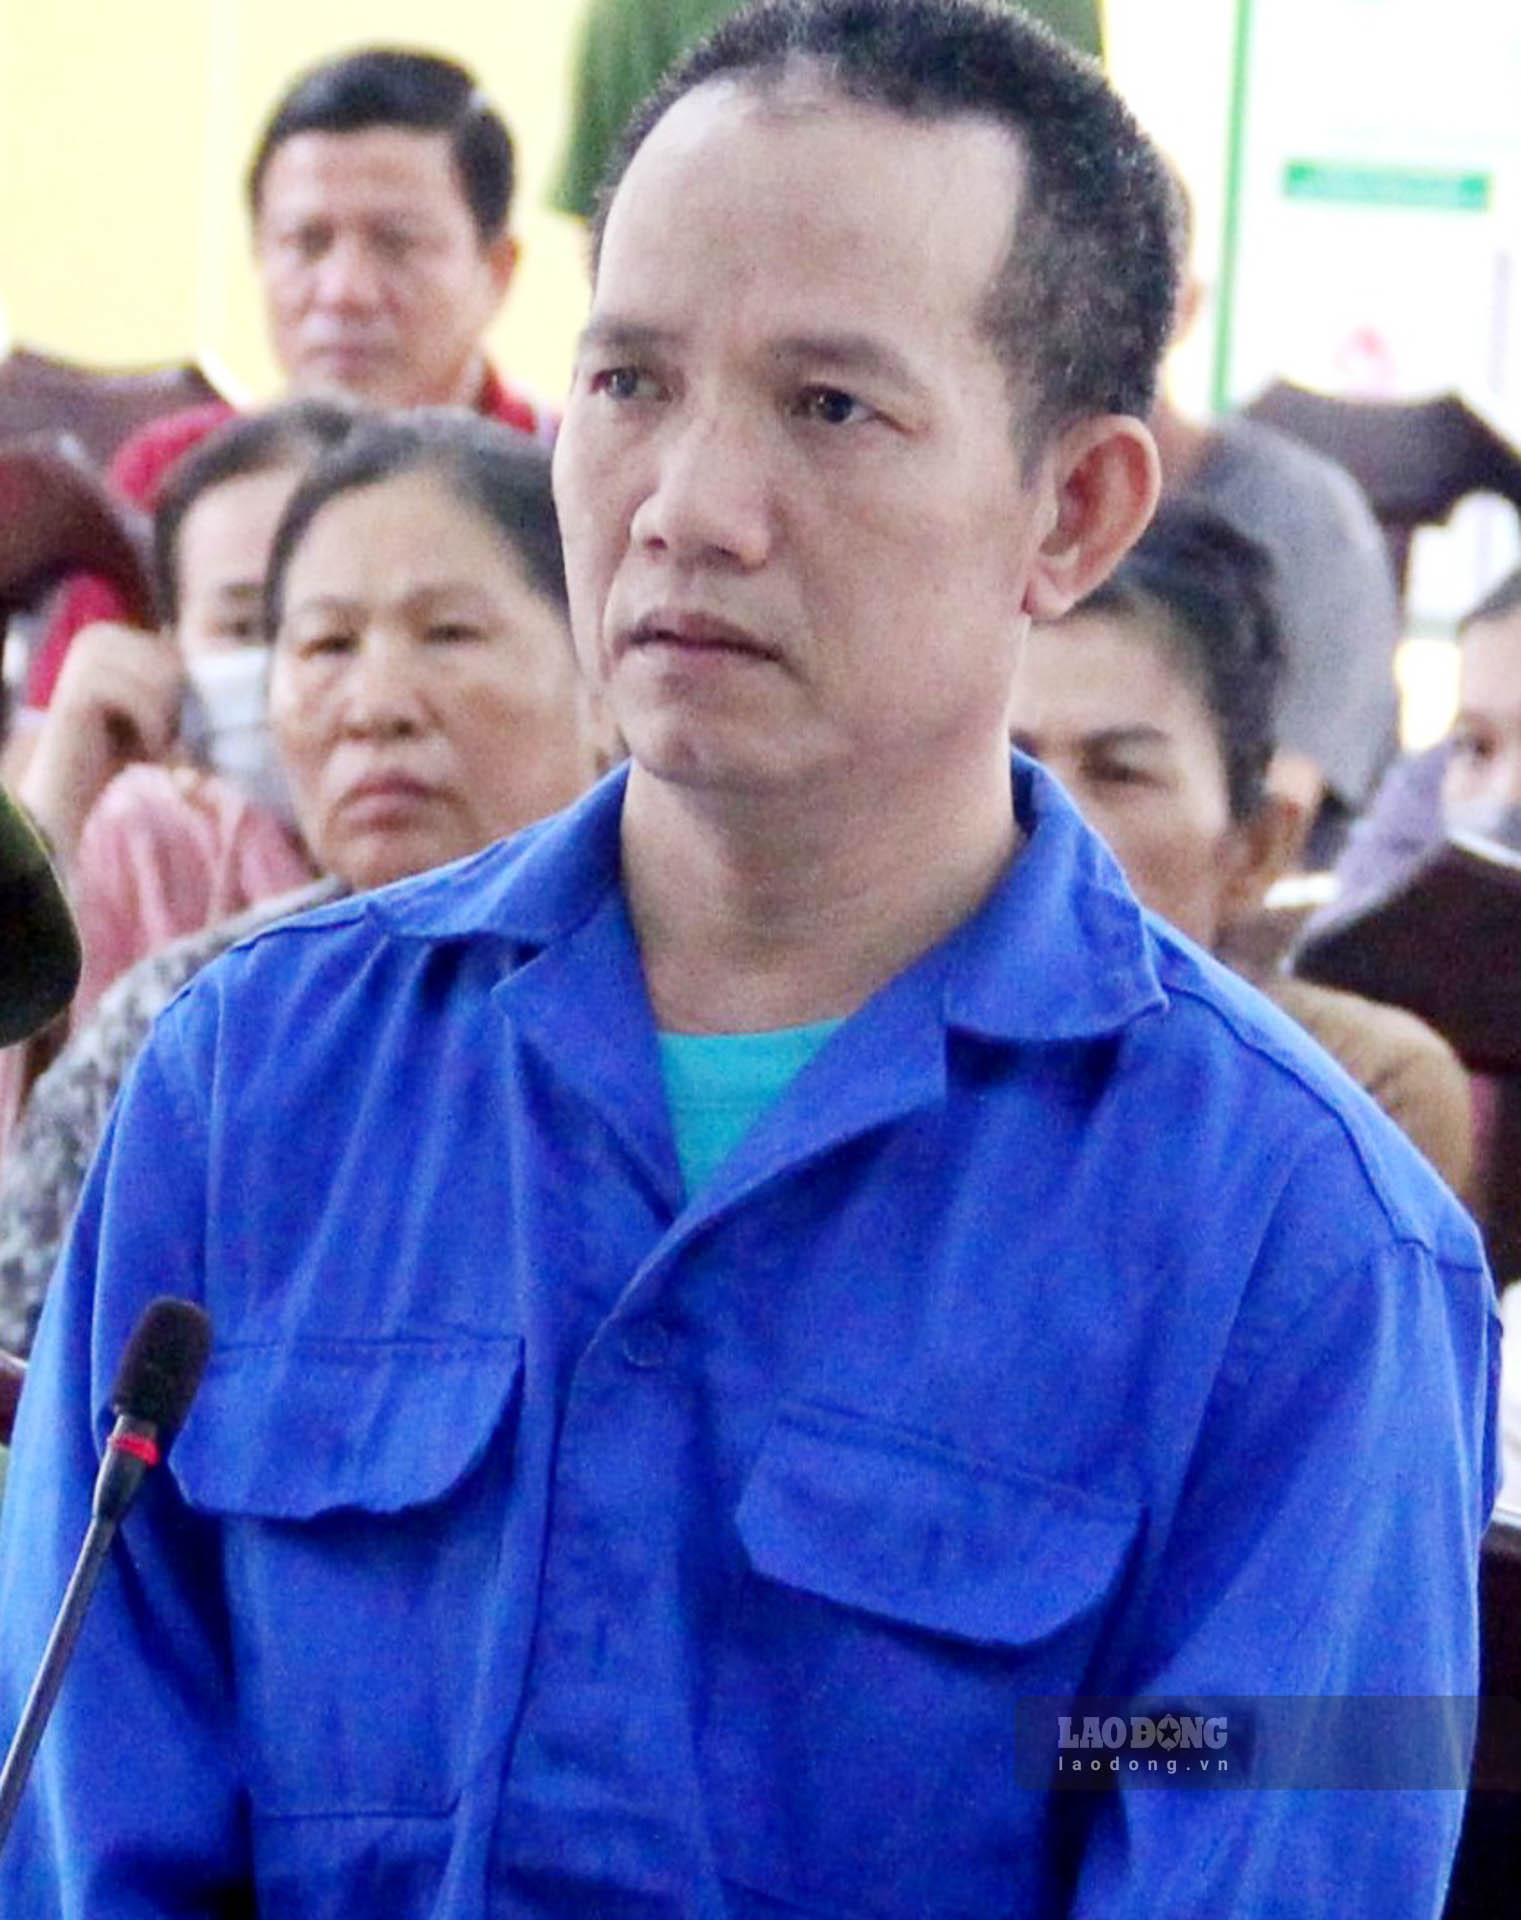 Bị cáo Huỳnh Văn Chơn nhận mức án tù chung thân vì tội giết người